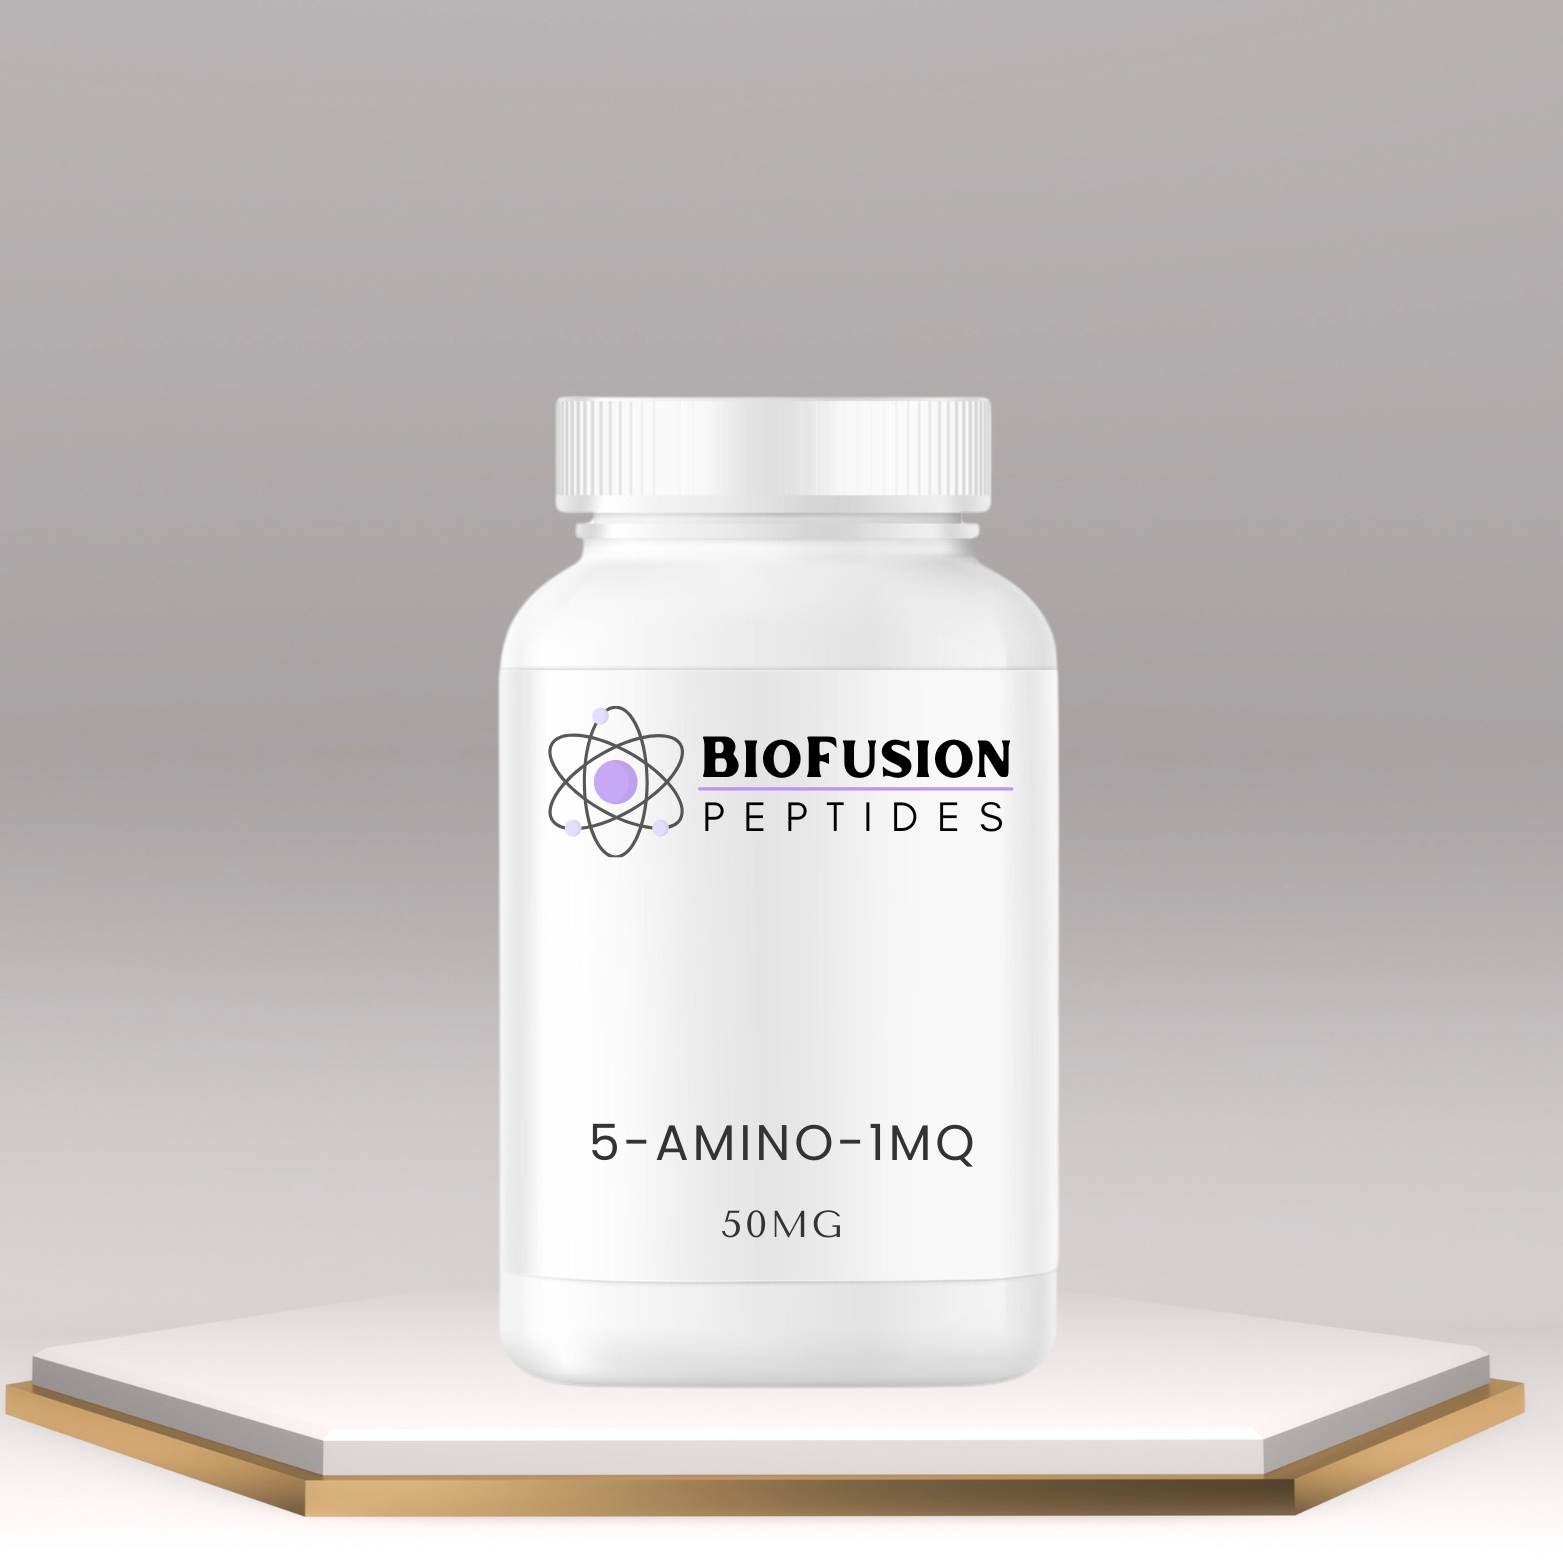 BioFusion Peptides 5-Amino-1MQ bottle 50mg